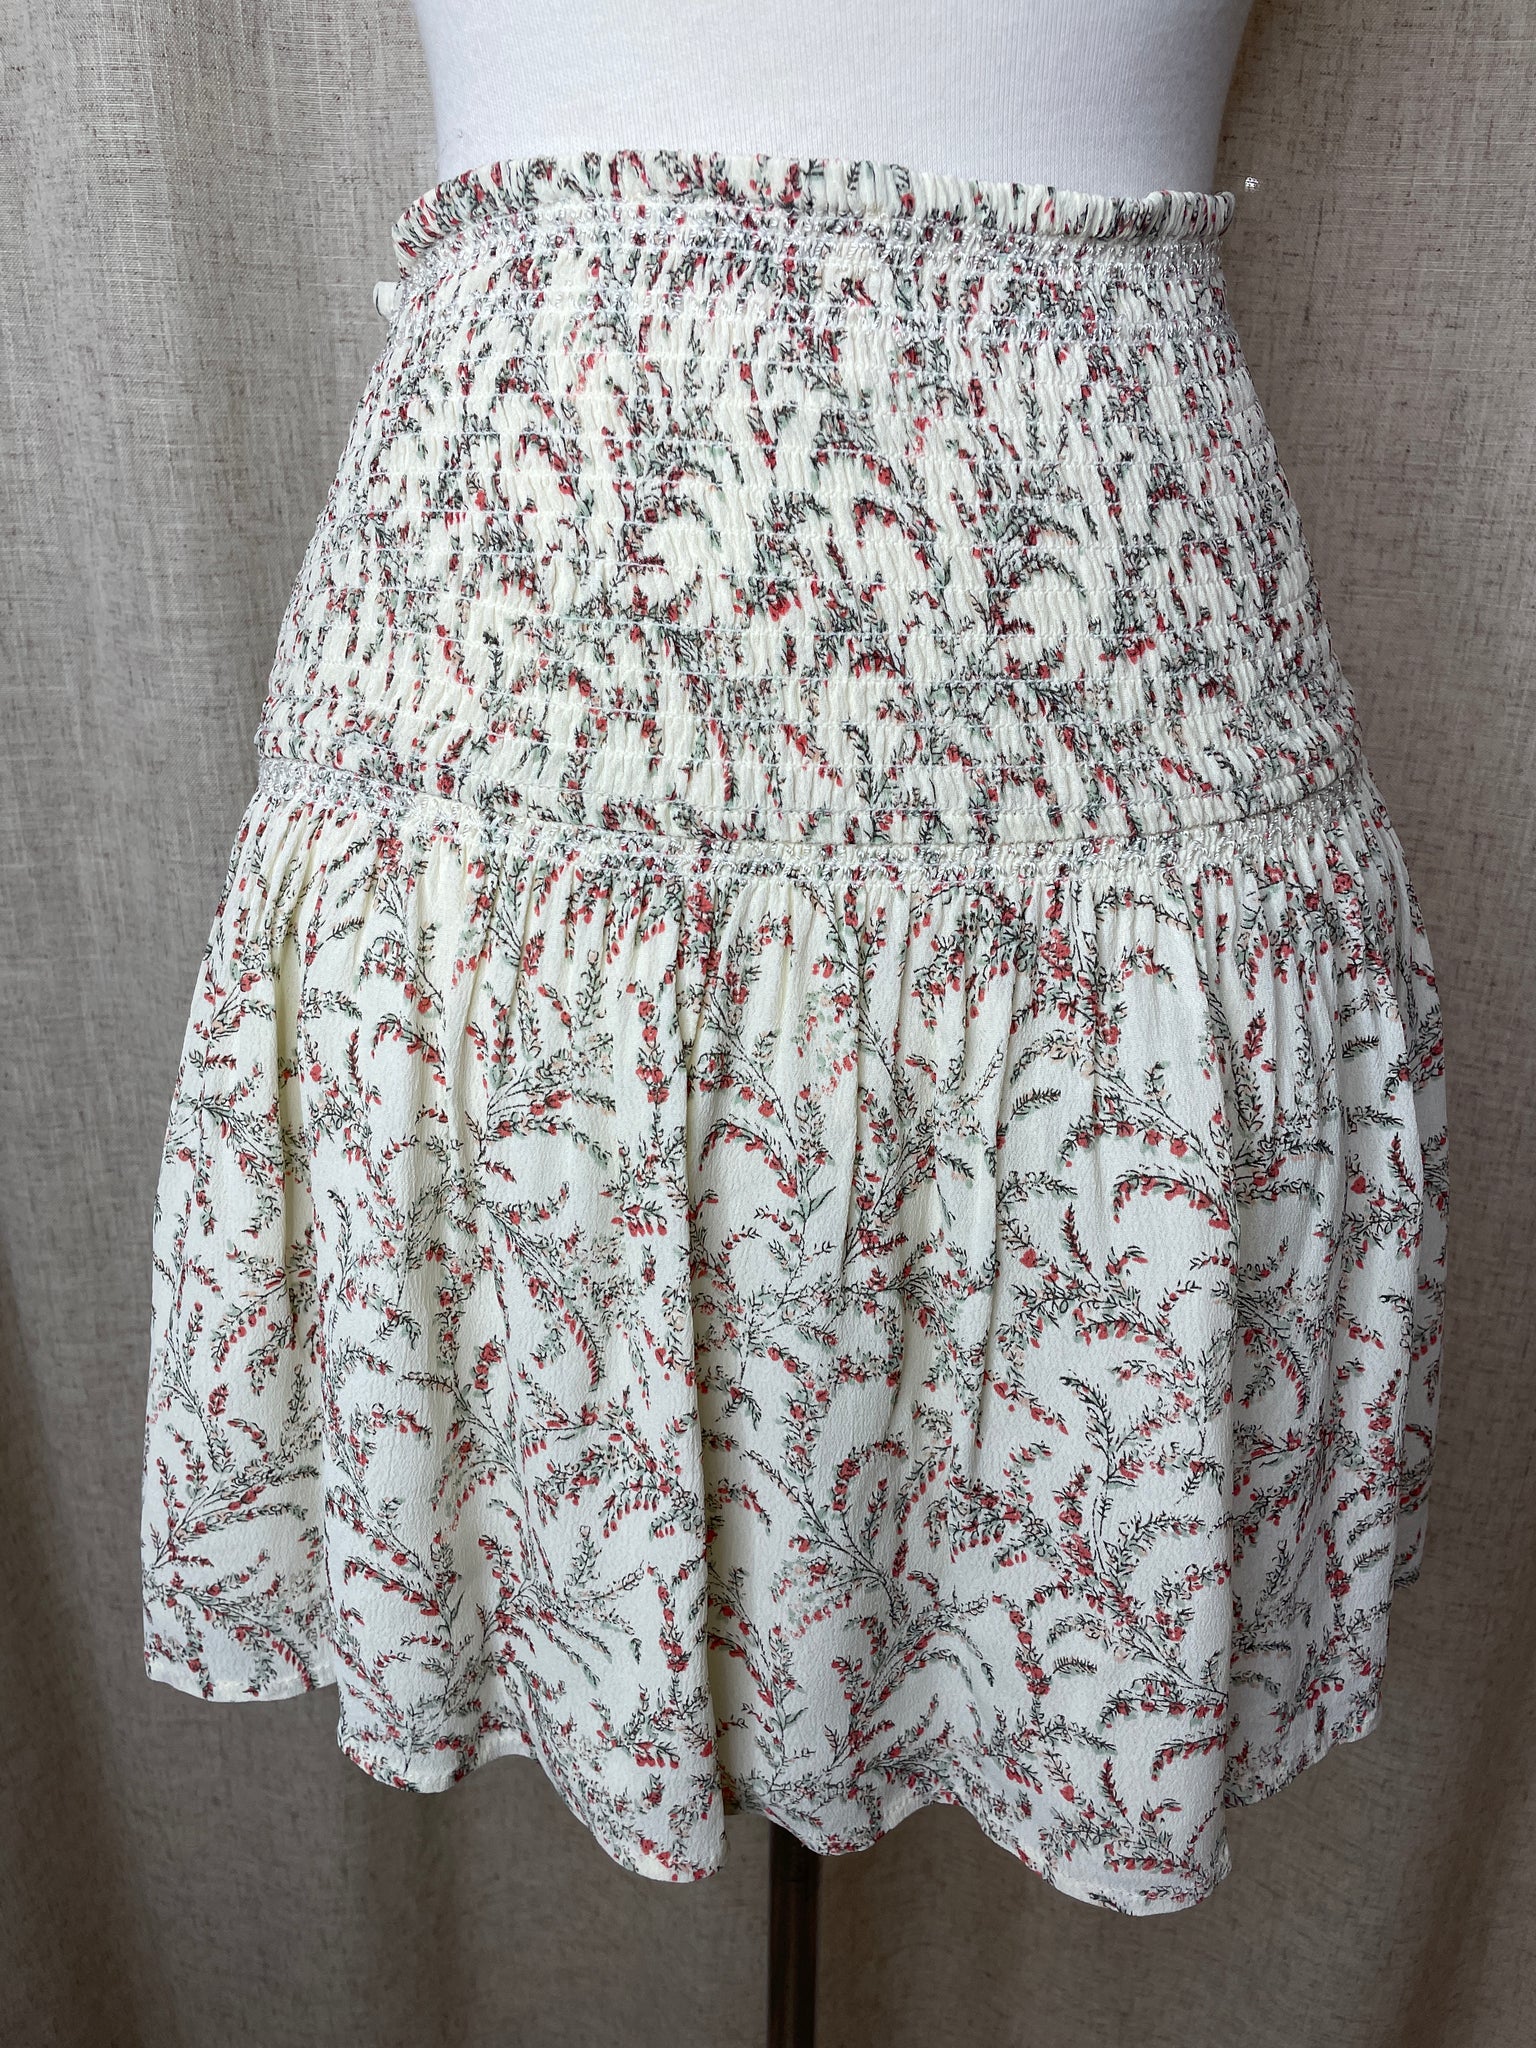 Ba&sh Petite Floral Mini Skirt